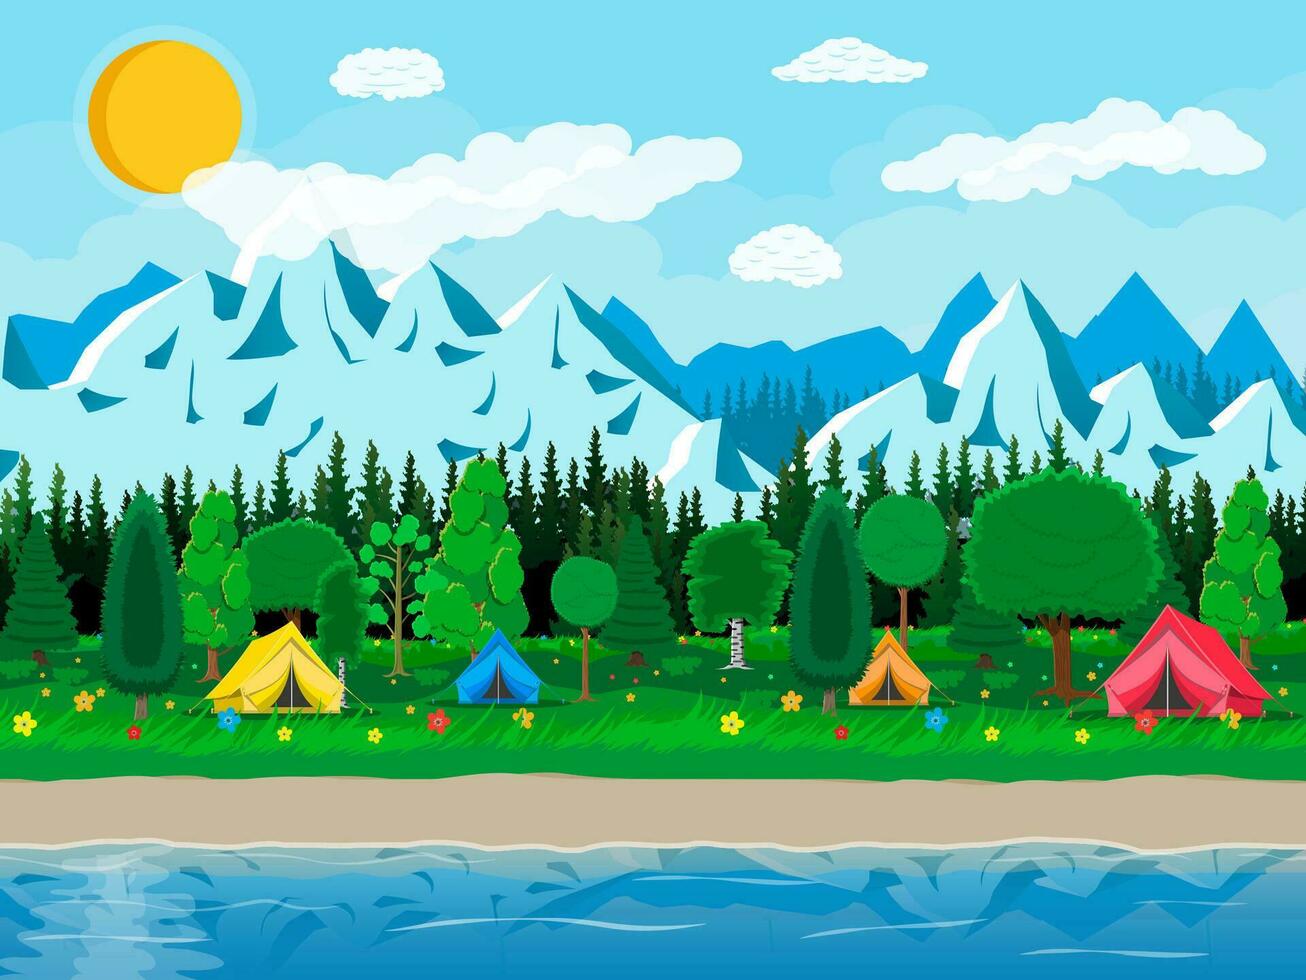 Wiese mit Gras und Camping. Zelte, Blumen, Berge, Bäume, Himmel, Sonne und Wolken. See und Felsen, Fluss. Natur Landschaft. Vektor Illustration im eben Stil